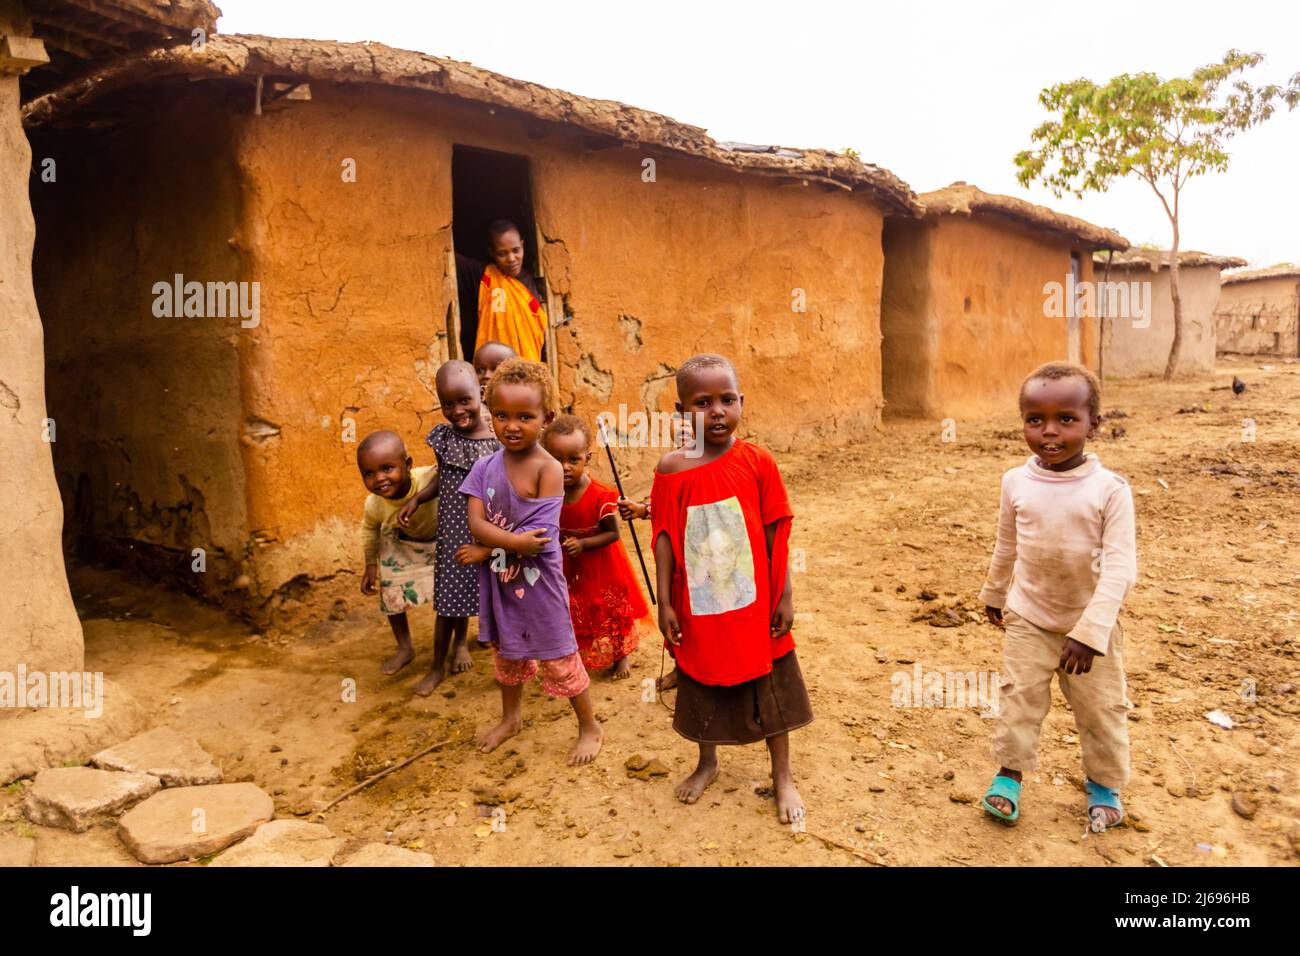 Les enfants de la région dans leur maison, Maasai Mara, Kenya, Afrique de l'est, Afrique Banque D'Images